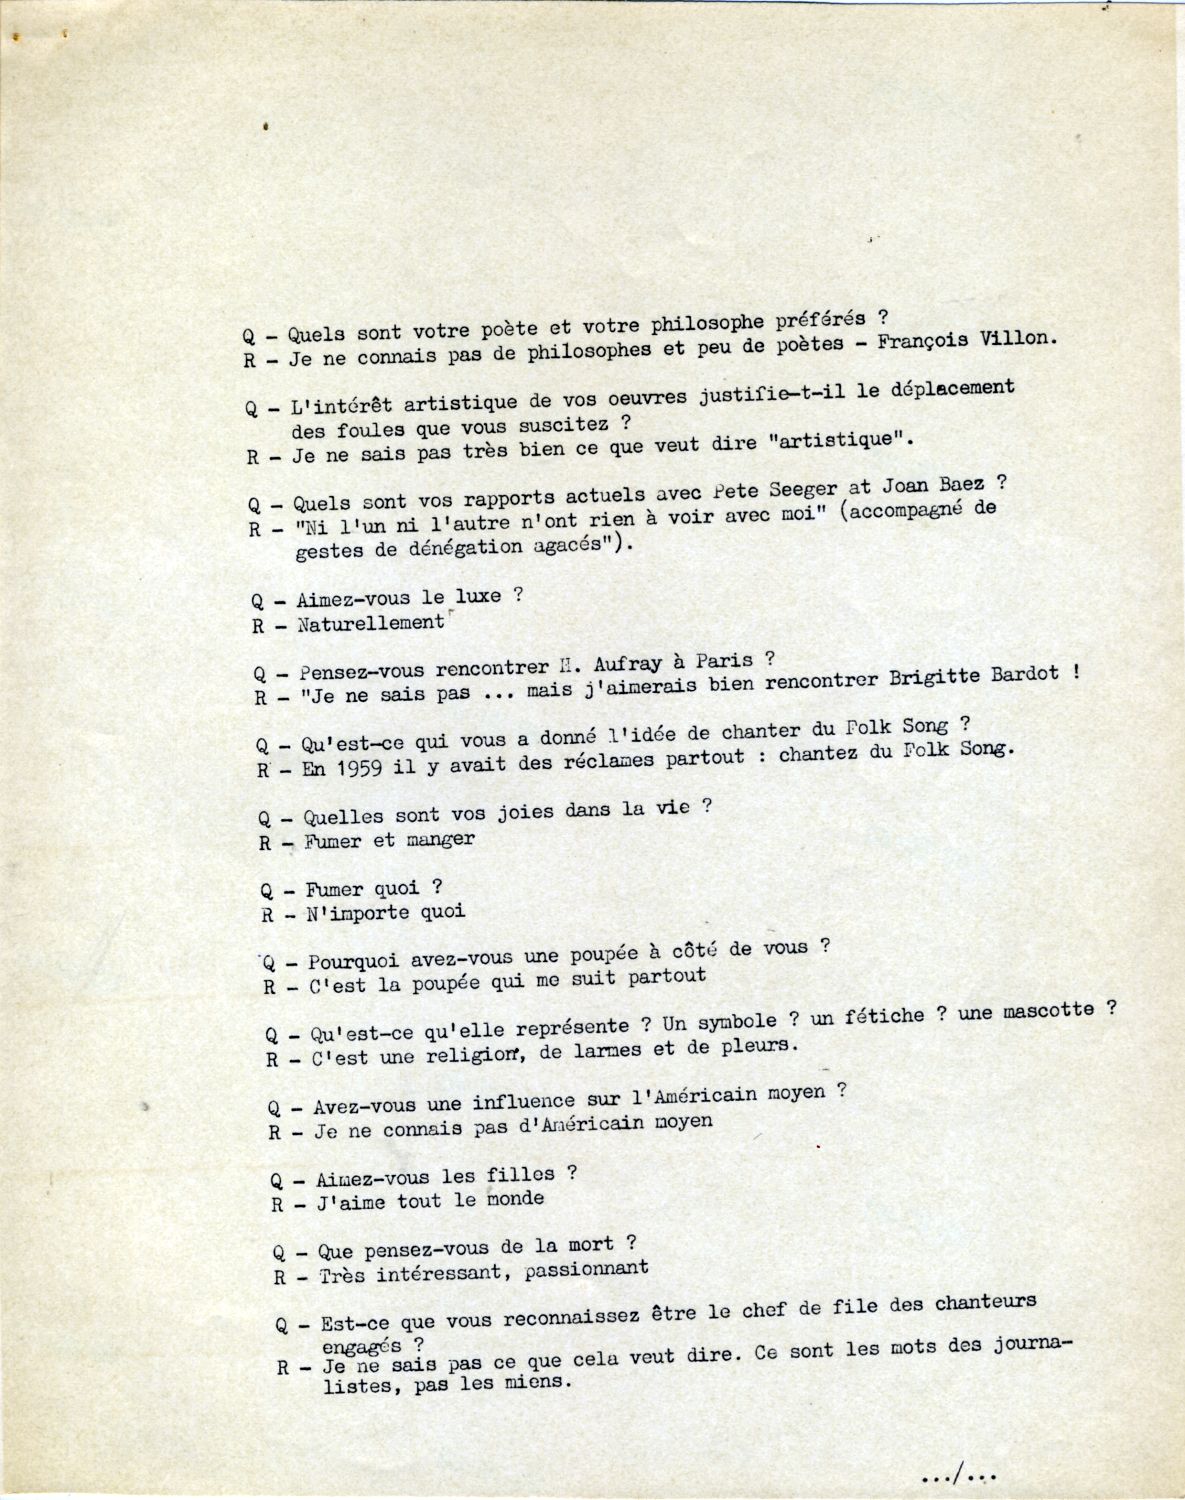 Paris 1966 press conference